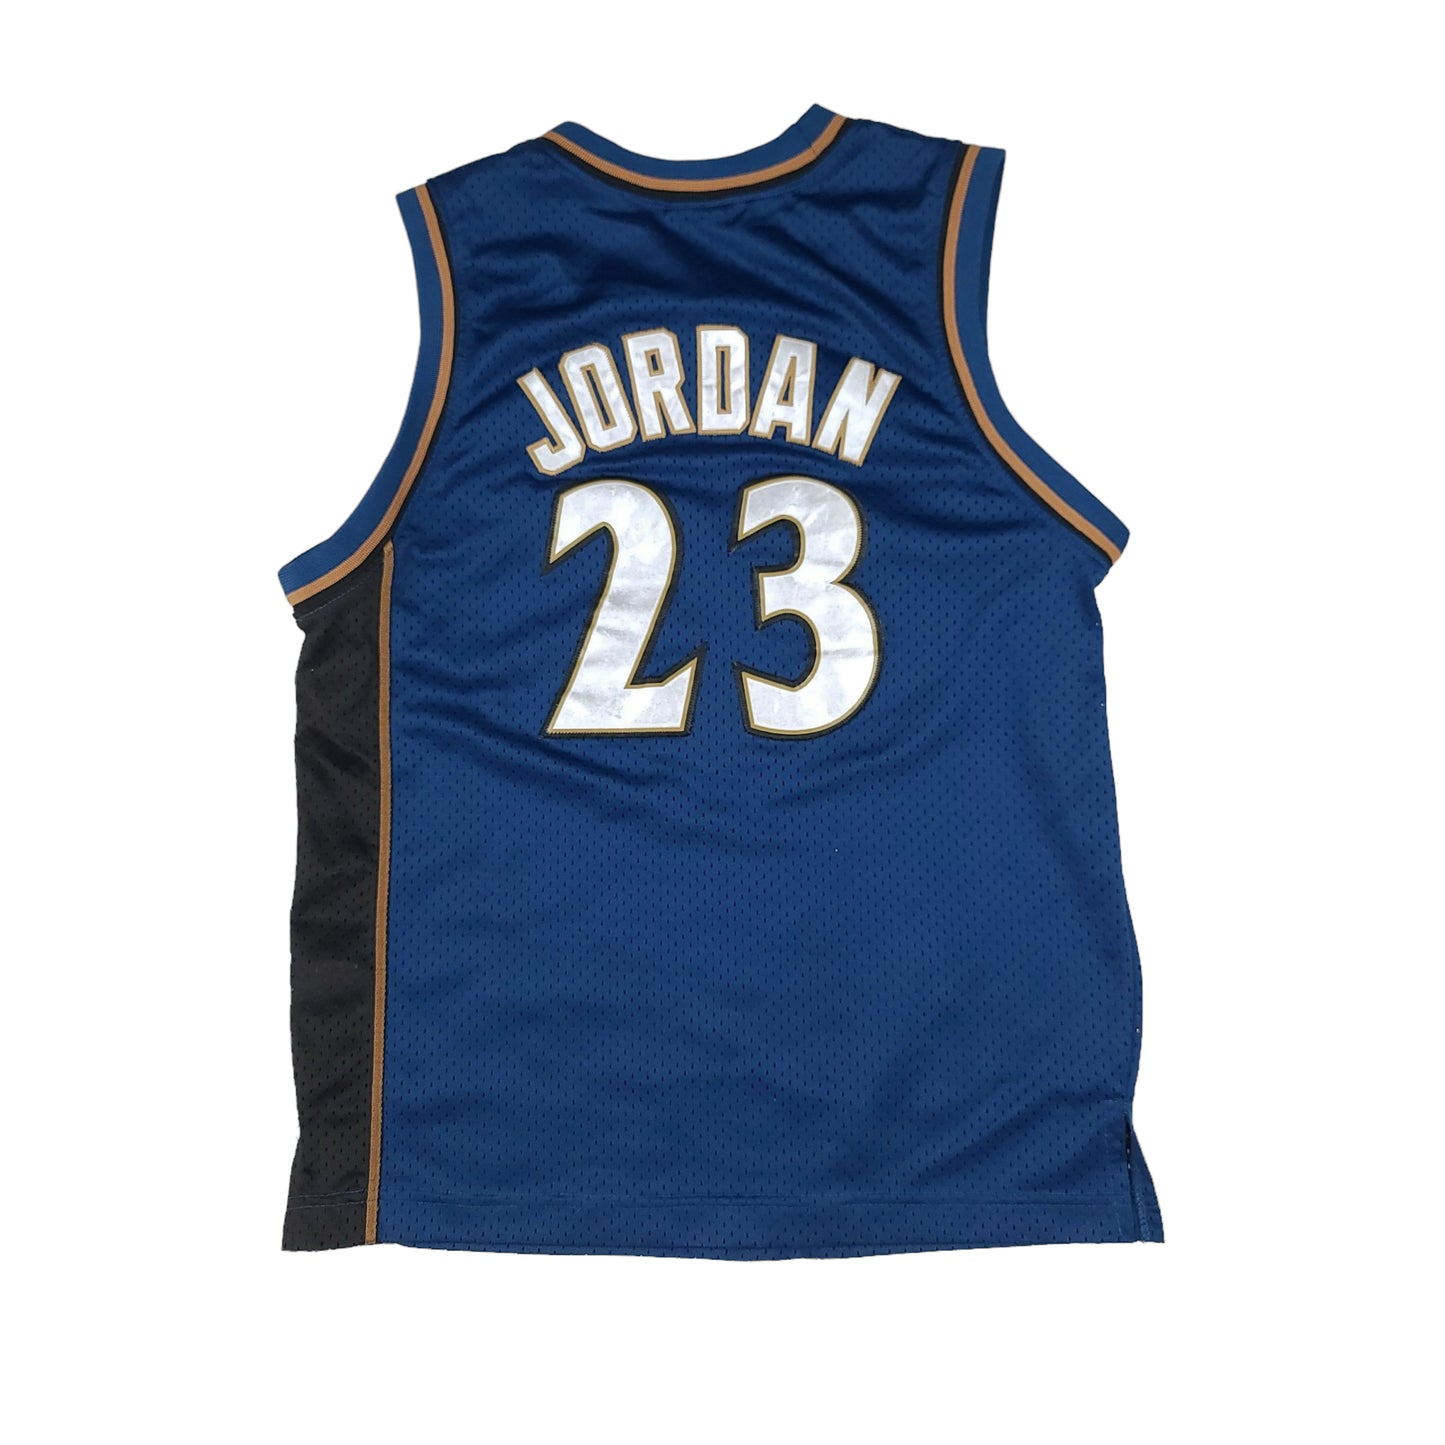 Vintage Michael Jordan Washington Wizards Nike Basketball Youth Jersey